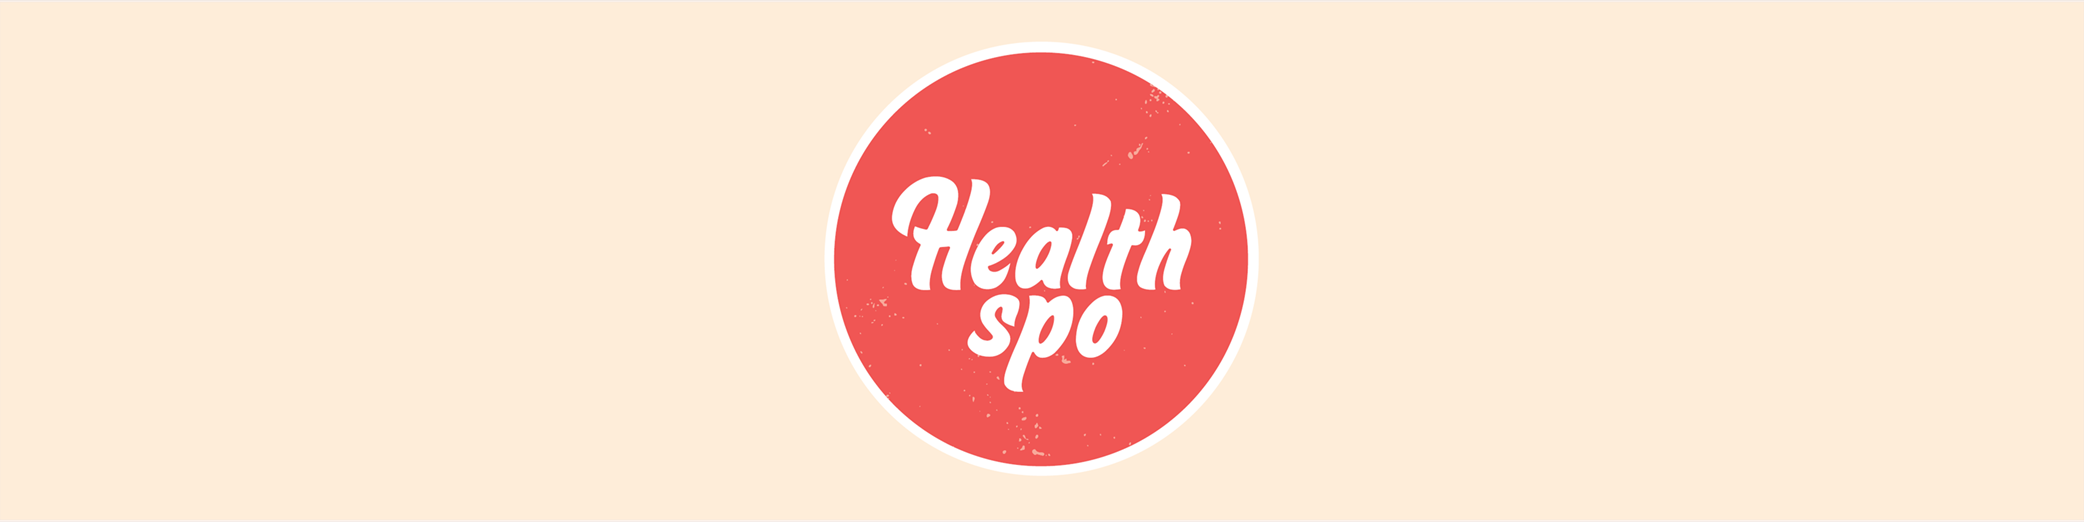 Healthspo-Website-header-1000x250px.png